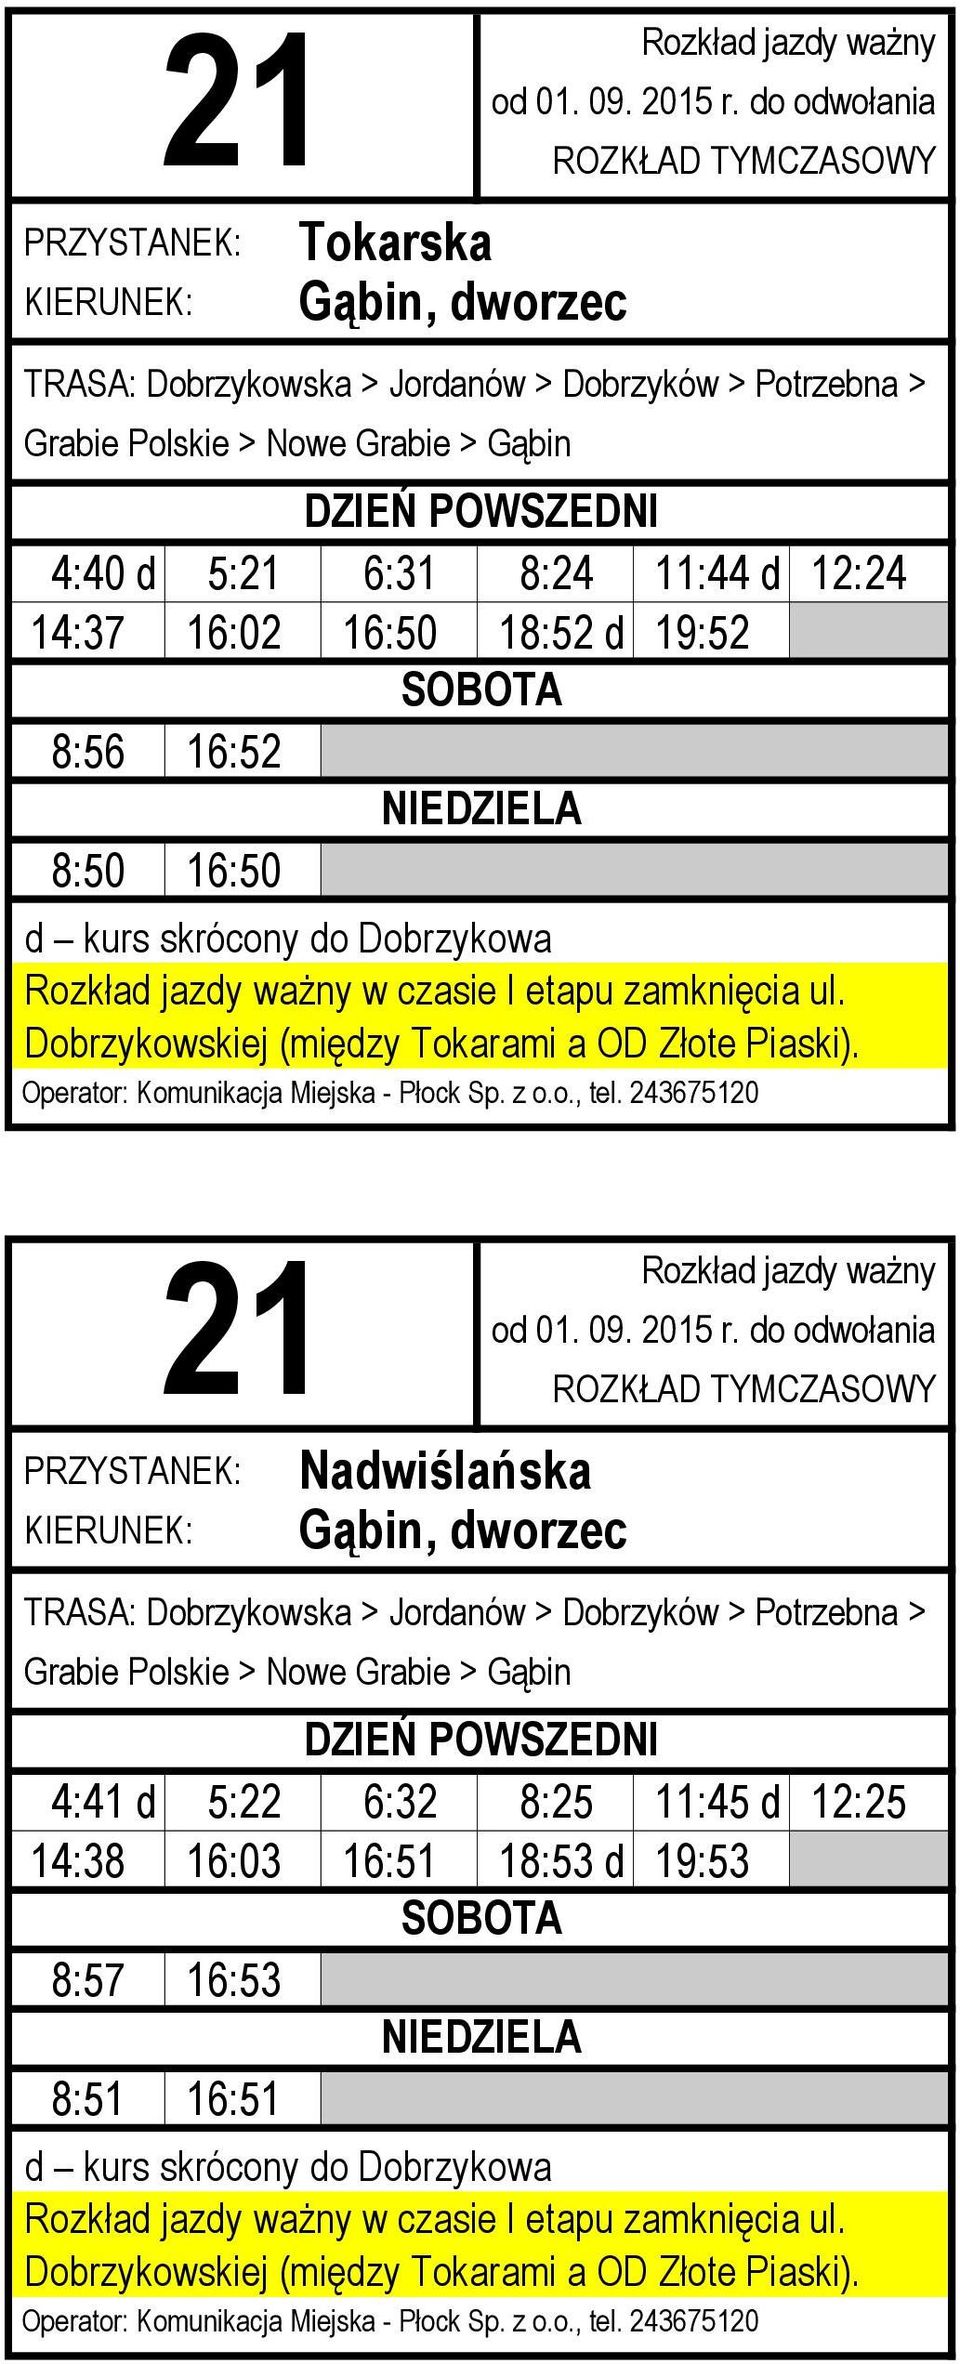 Nadwiślańska TRASA: Dobrzykowska > Jordanów > Dobrzyków > Potrzebna > Grabie Polskie > Nowe